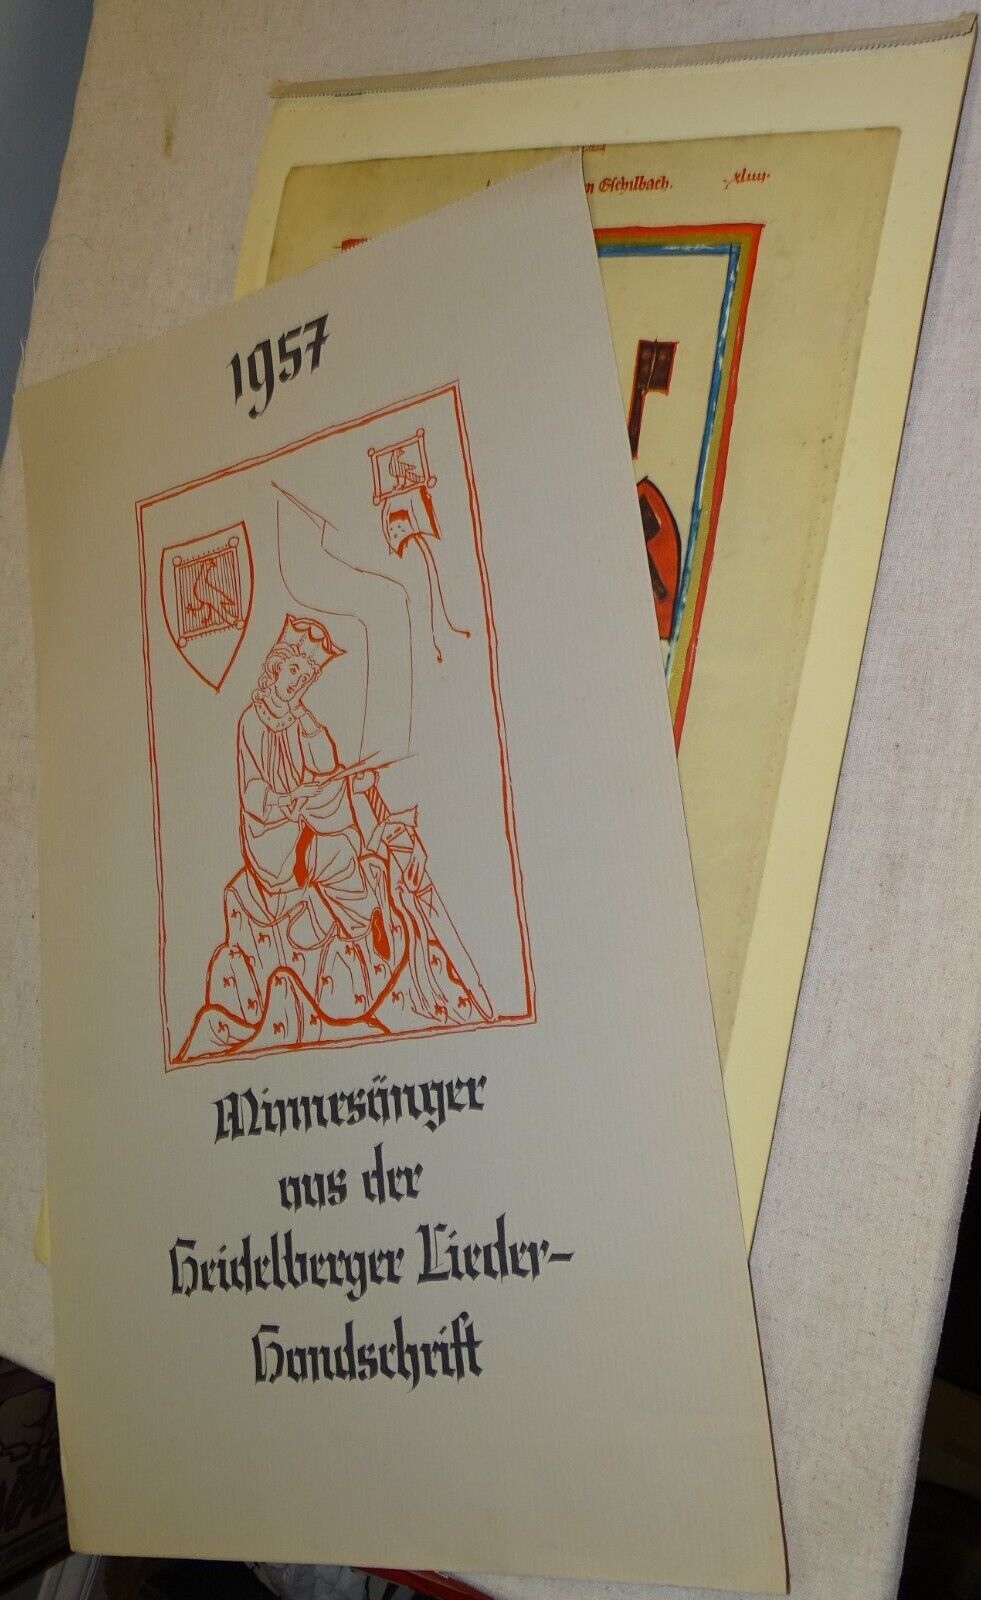 1957 German Calendar (Heidelberger Liederhandschrift ?)